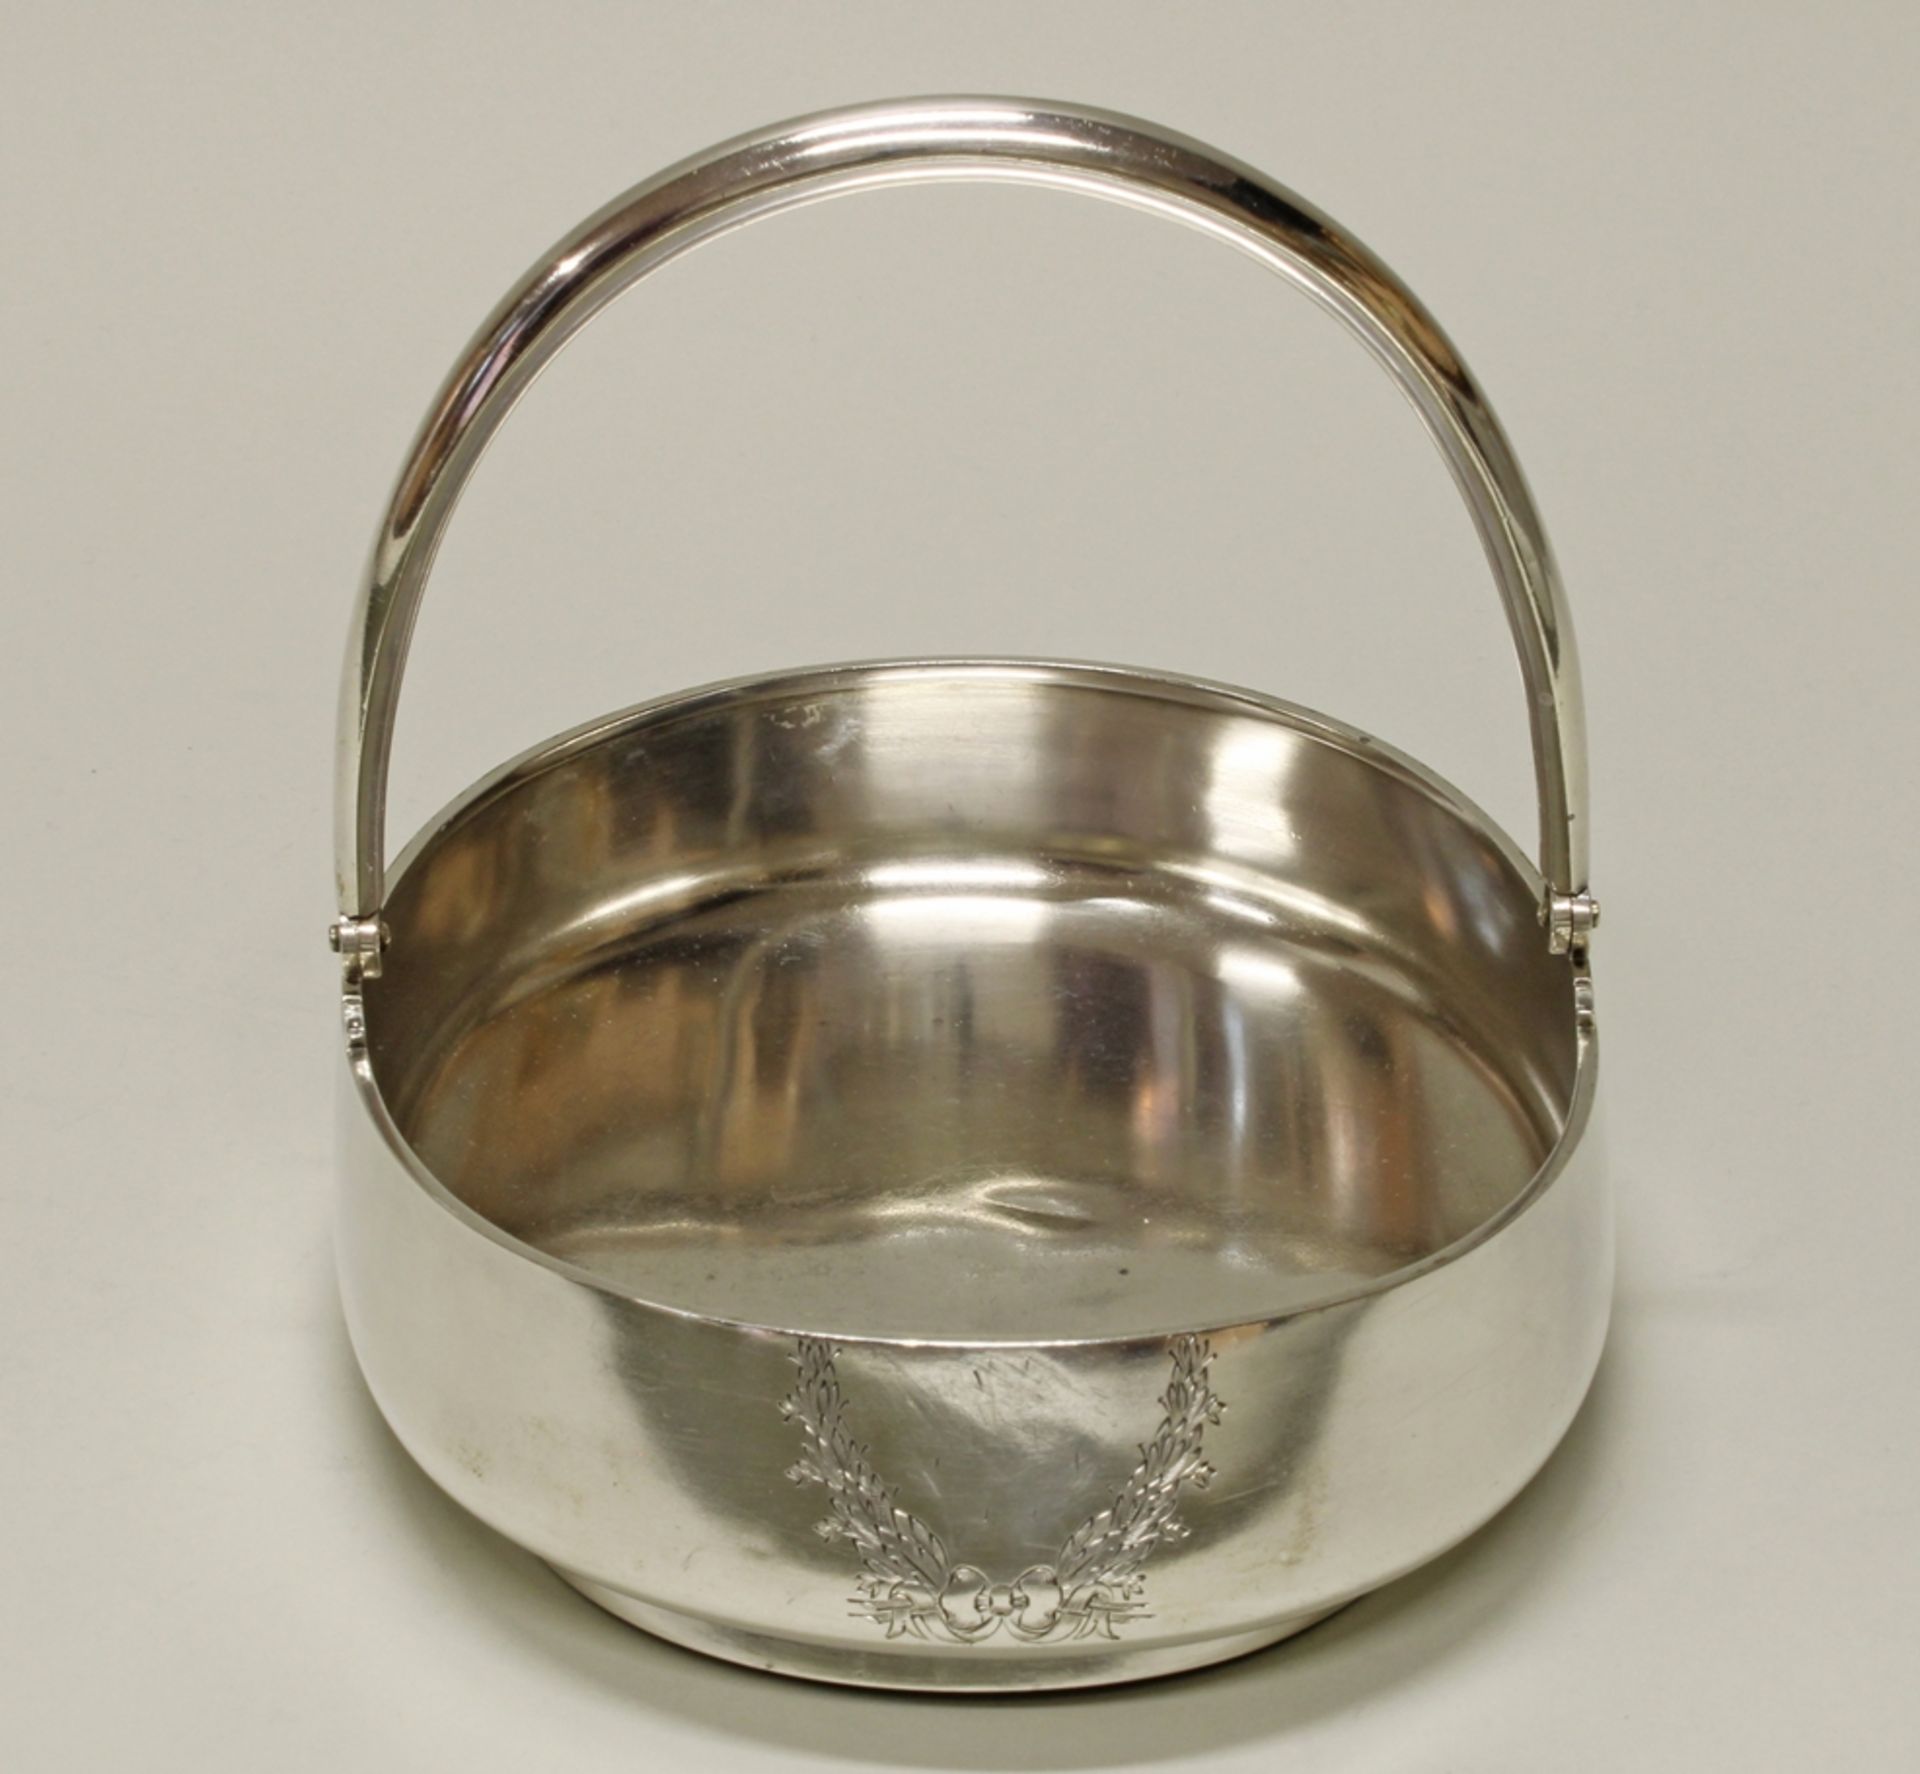 Henkelschale, Silber 84, St. Petersburg, 19. Jh., oval, glatt, beweglicher Bügelhenkel, graviertes  - Bild 2 aus 3